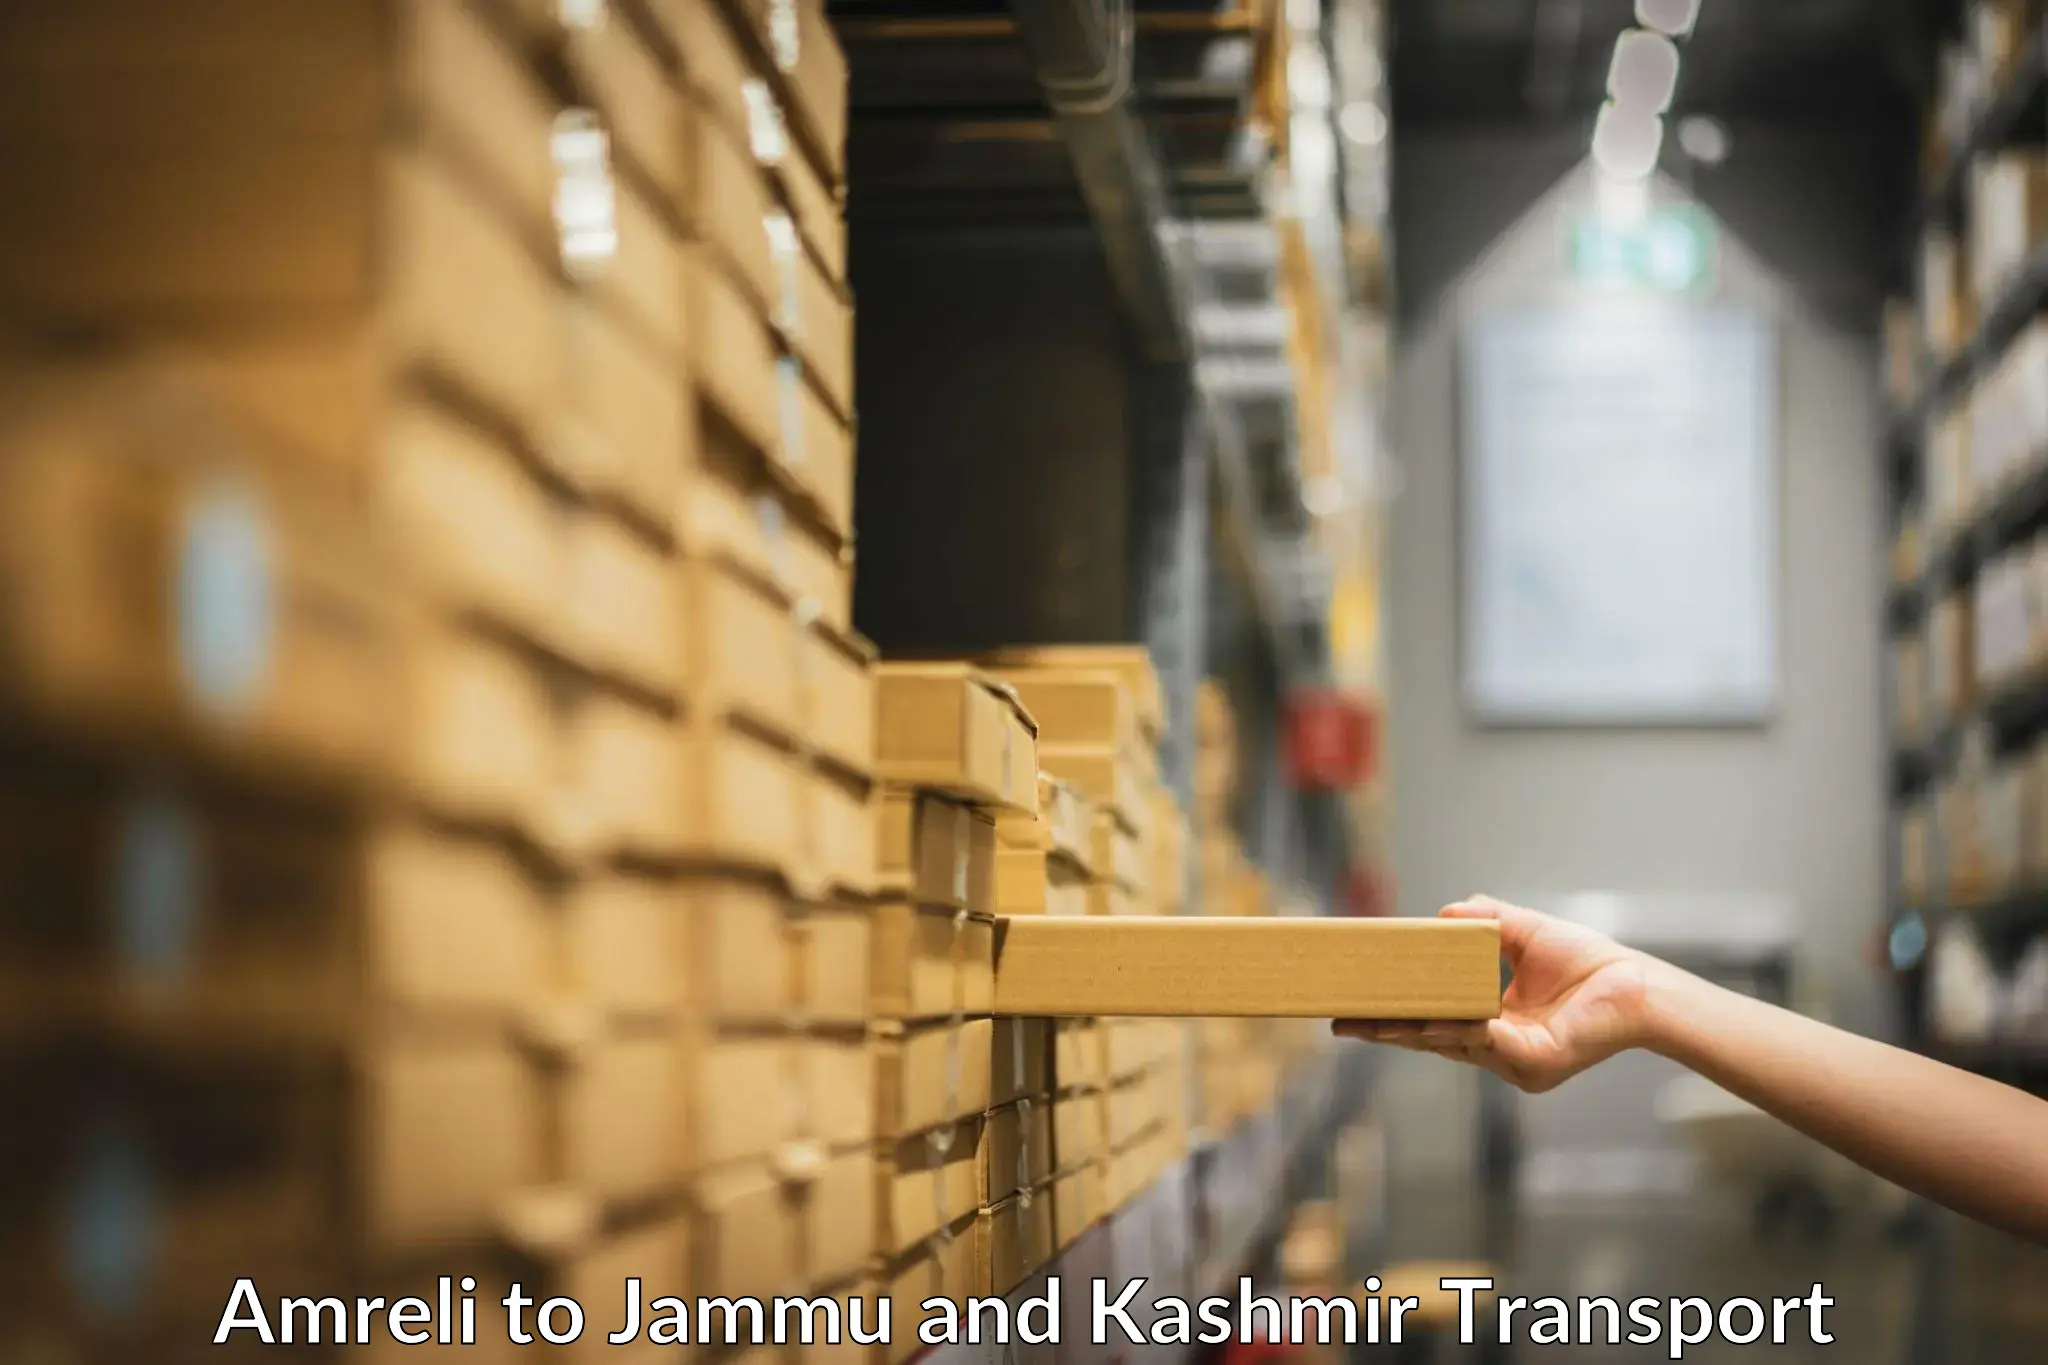 Intercity transport Amreli to Srinagar Kashmir